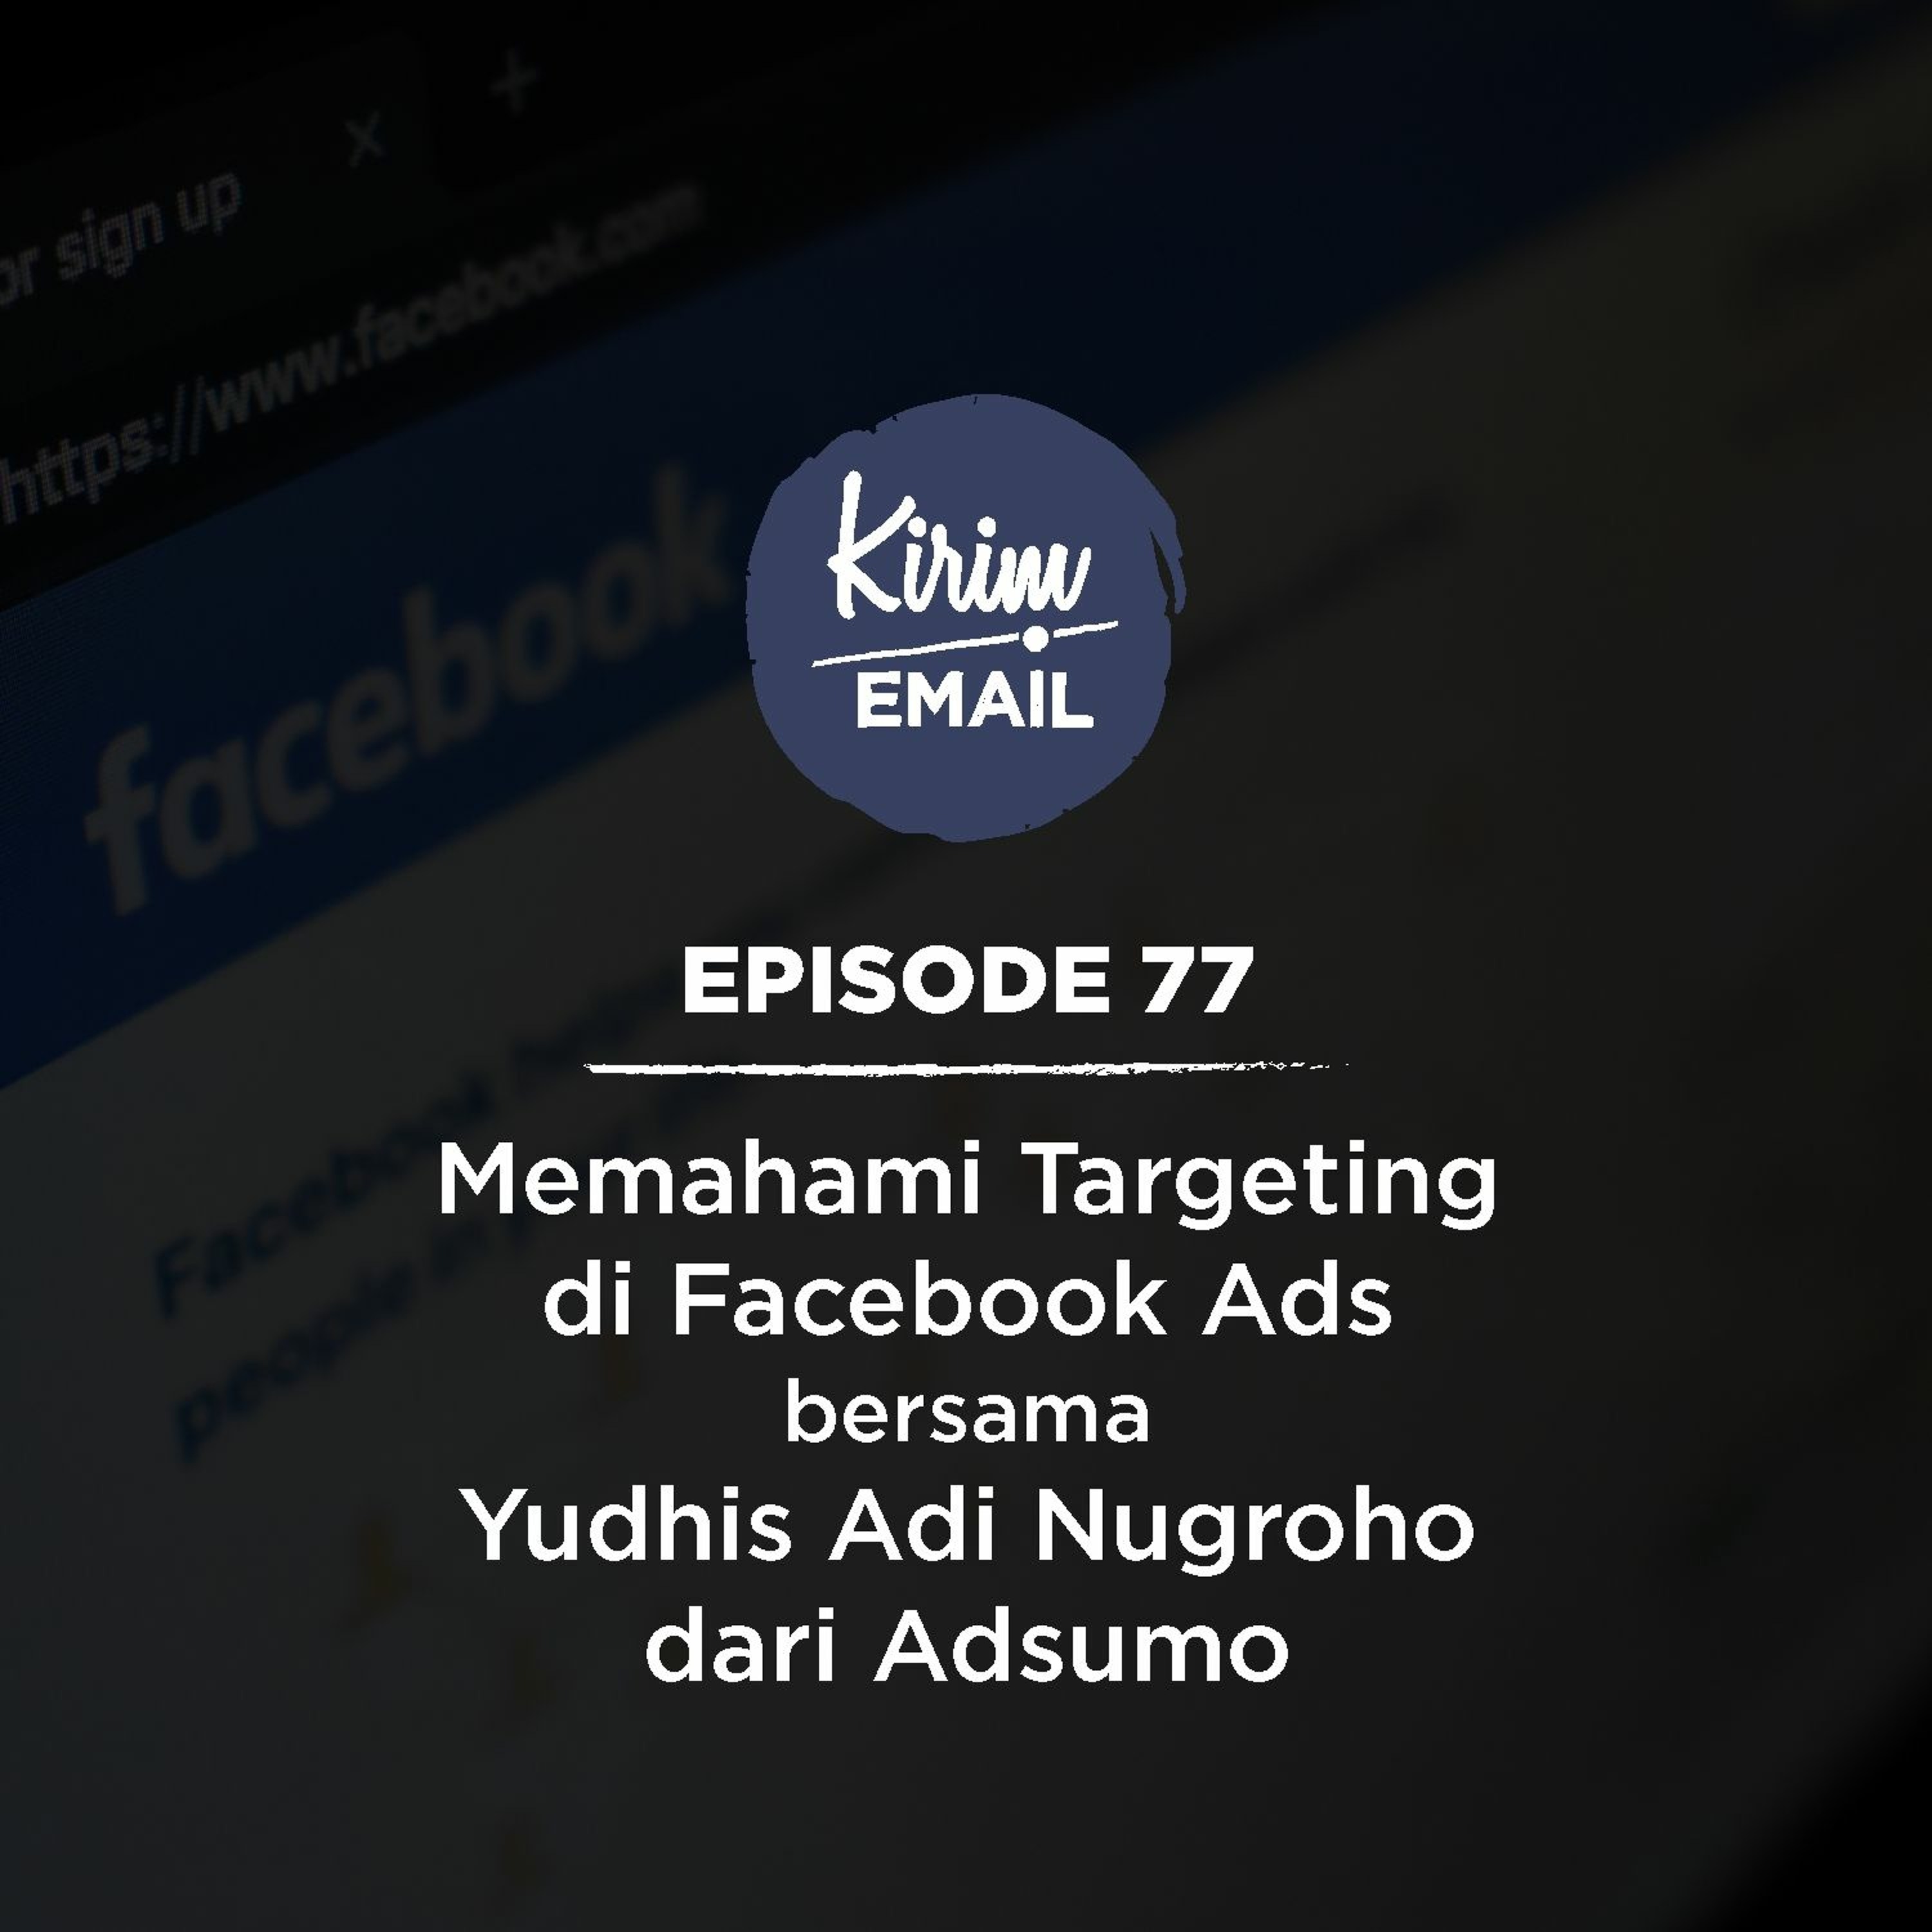 Memahami Targeting di Facebook Ads Bersama Yudhis Adi Nugroho Dari Adsumo - Ep. #77